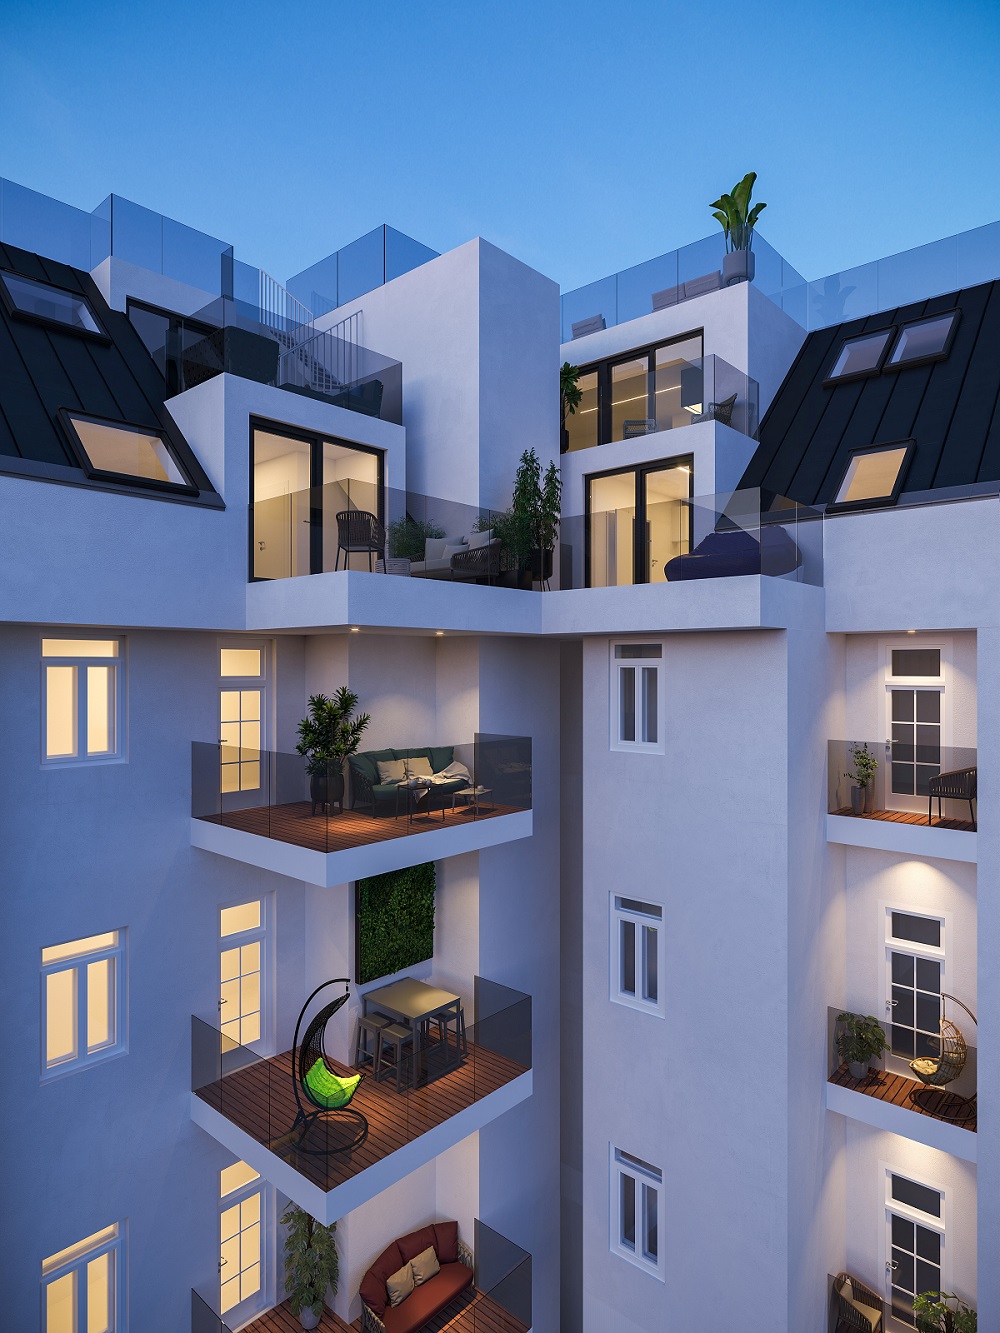 Ottakring_Immobilien zum Verlieben | Ausgezeichneter Makler Top Immobilien Graz Wien Wohnungskauf Eigentum, Häuser, exklusive Projekte